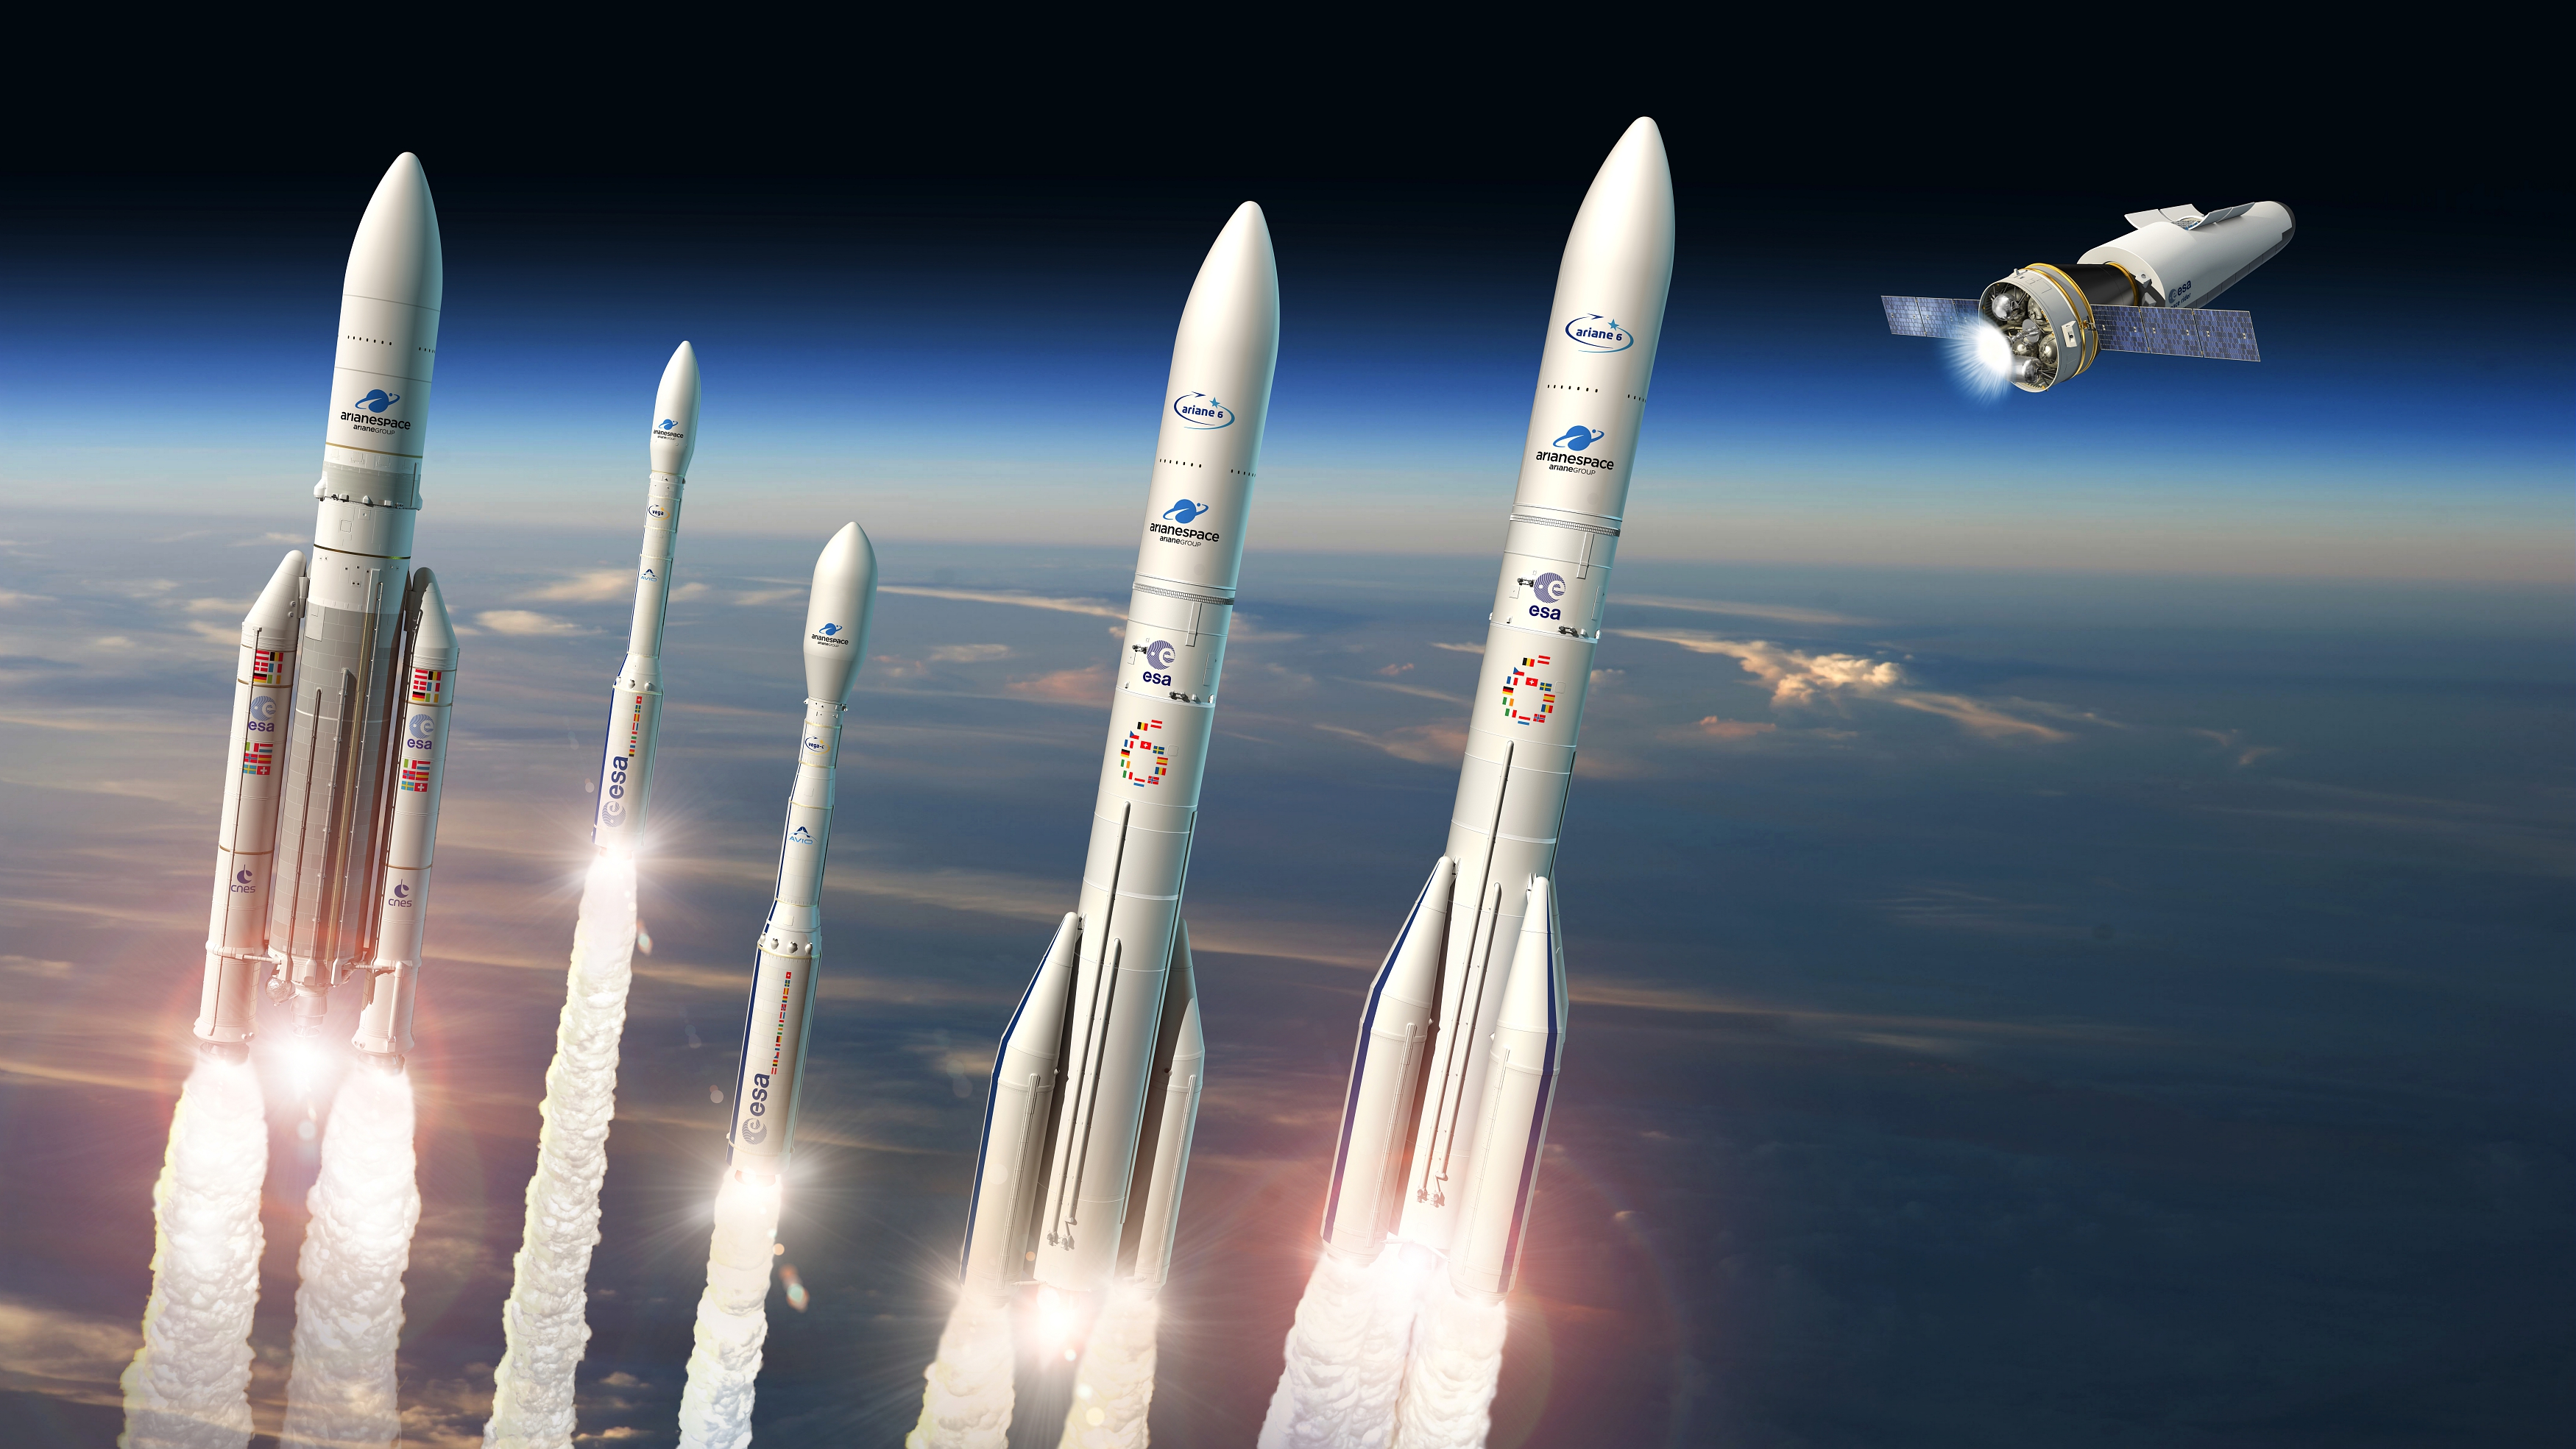 Artist’s impression (left to right): Ariane 5, Vega, Vega-C, Ariane 62, Ariane 64, Space Rider.